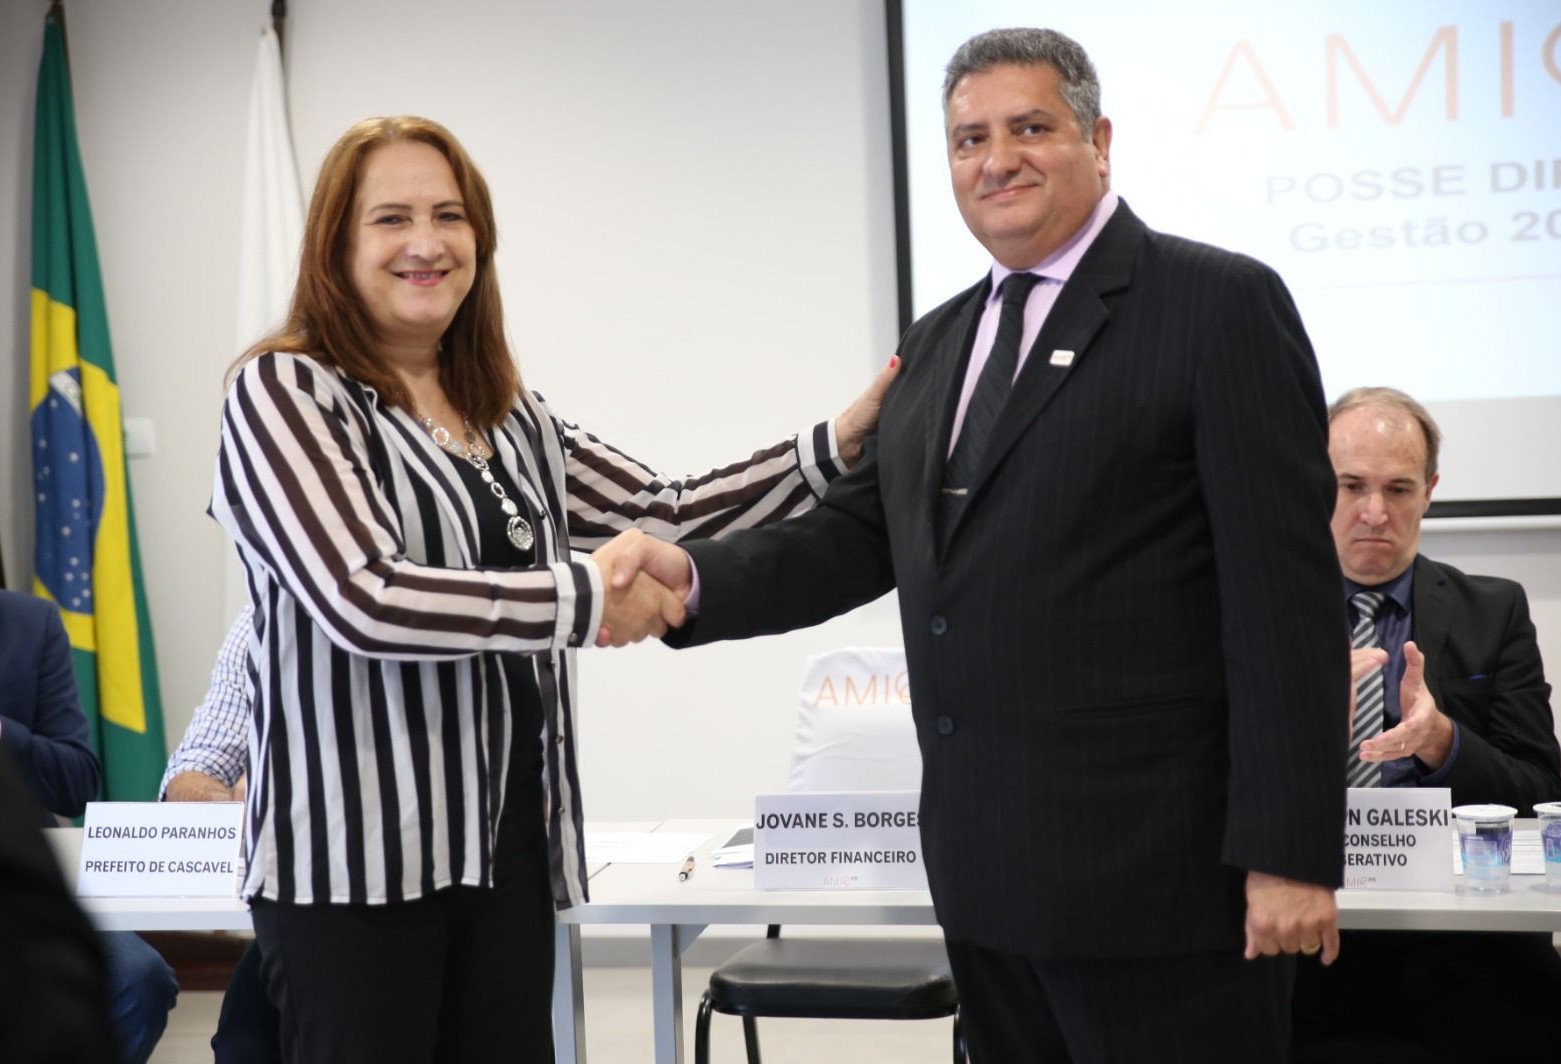 Empresário Jovane Borges é empossado presidente da AMIC PR